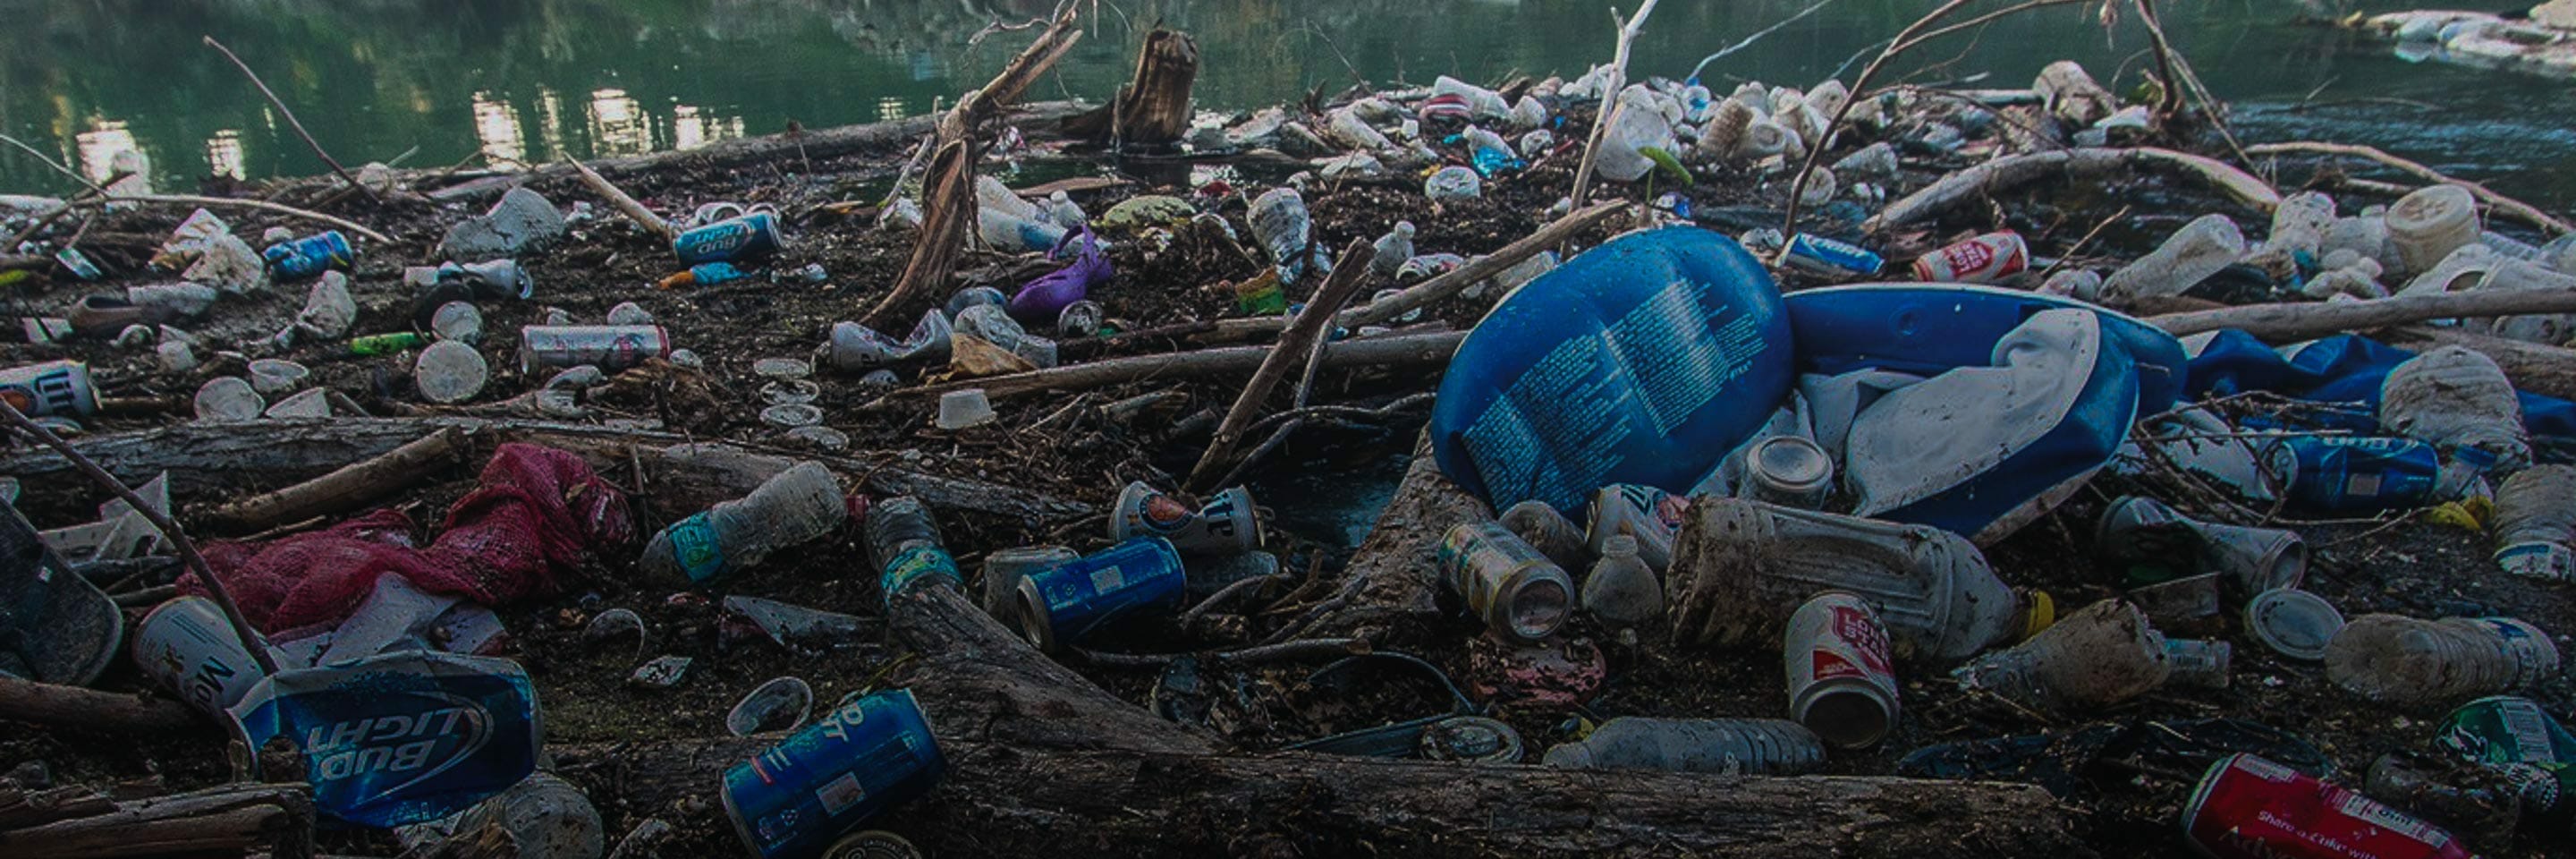 Les déchets verts : pratiques à bannir et solutions Ecodrop !